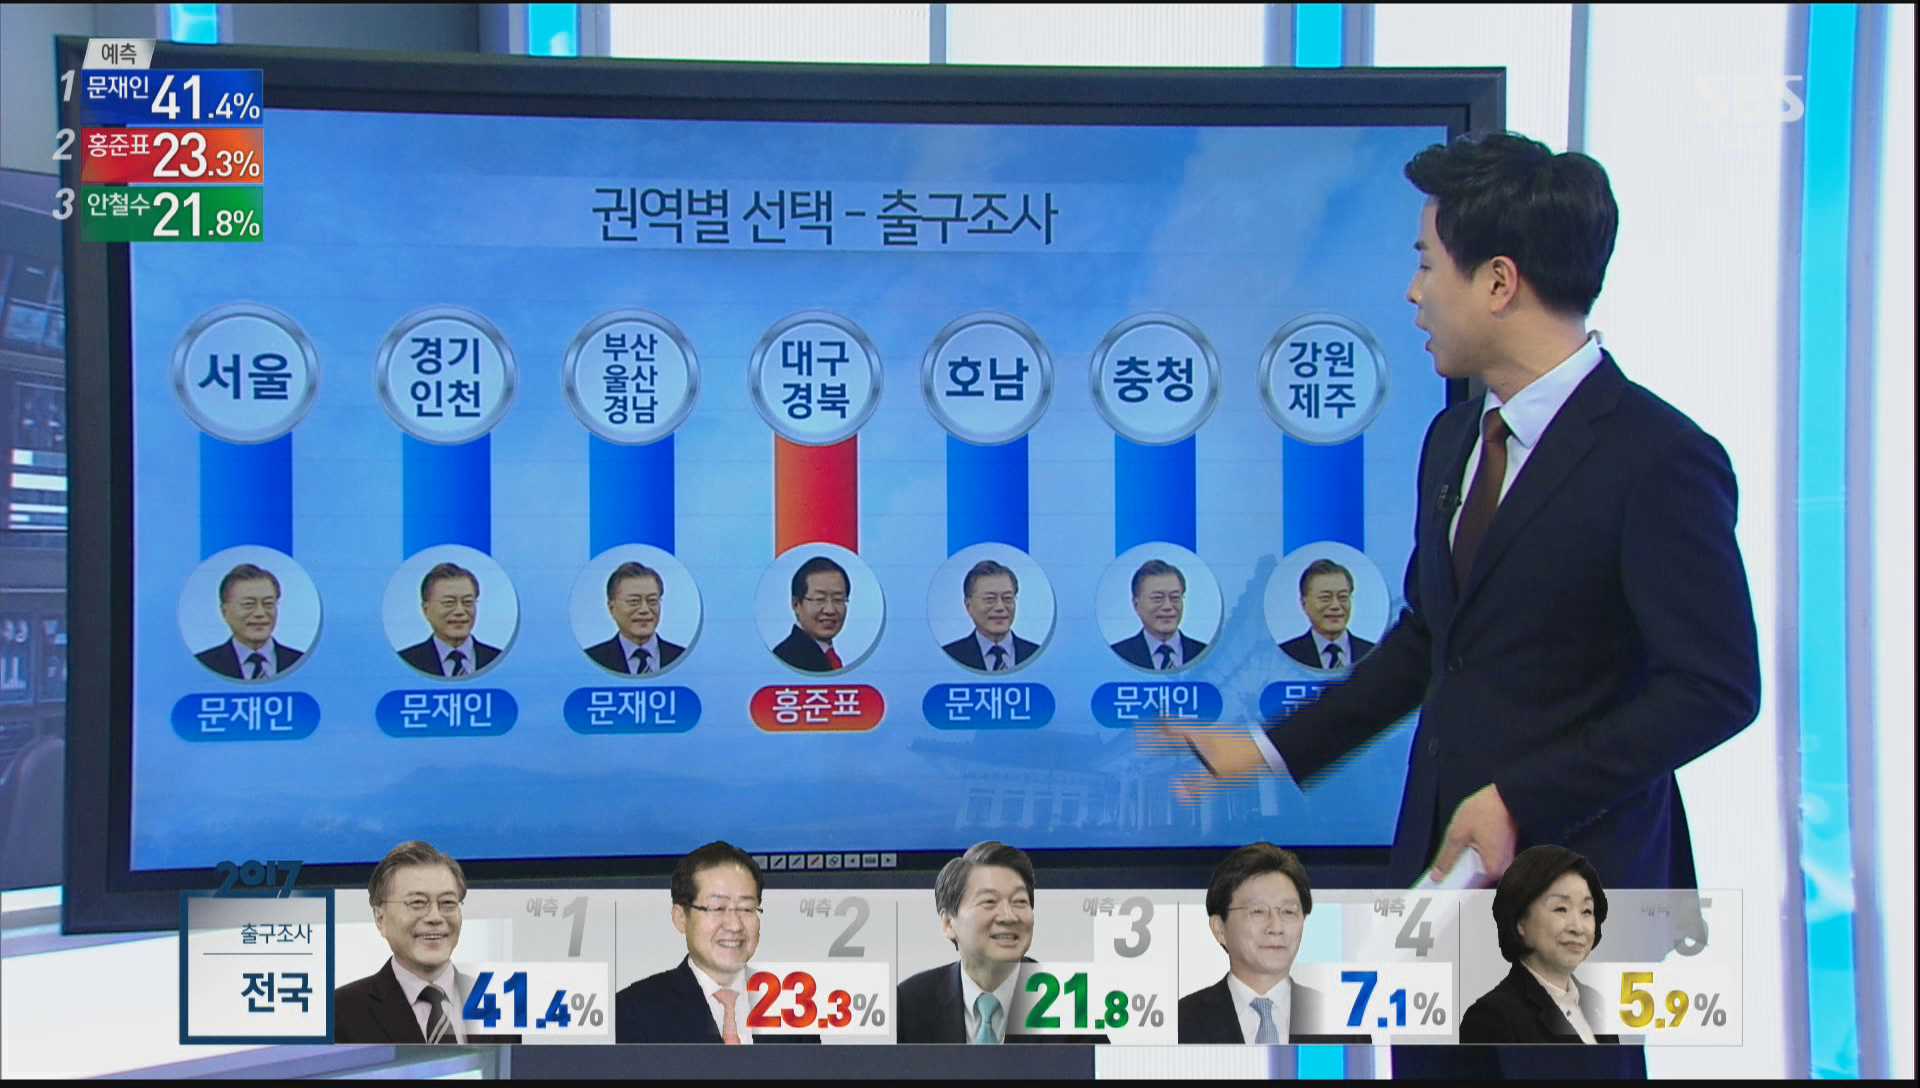 0509_201452_CH6-1_2017 국민의선택 3부 특집 SBS 8뉴스.jpg